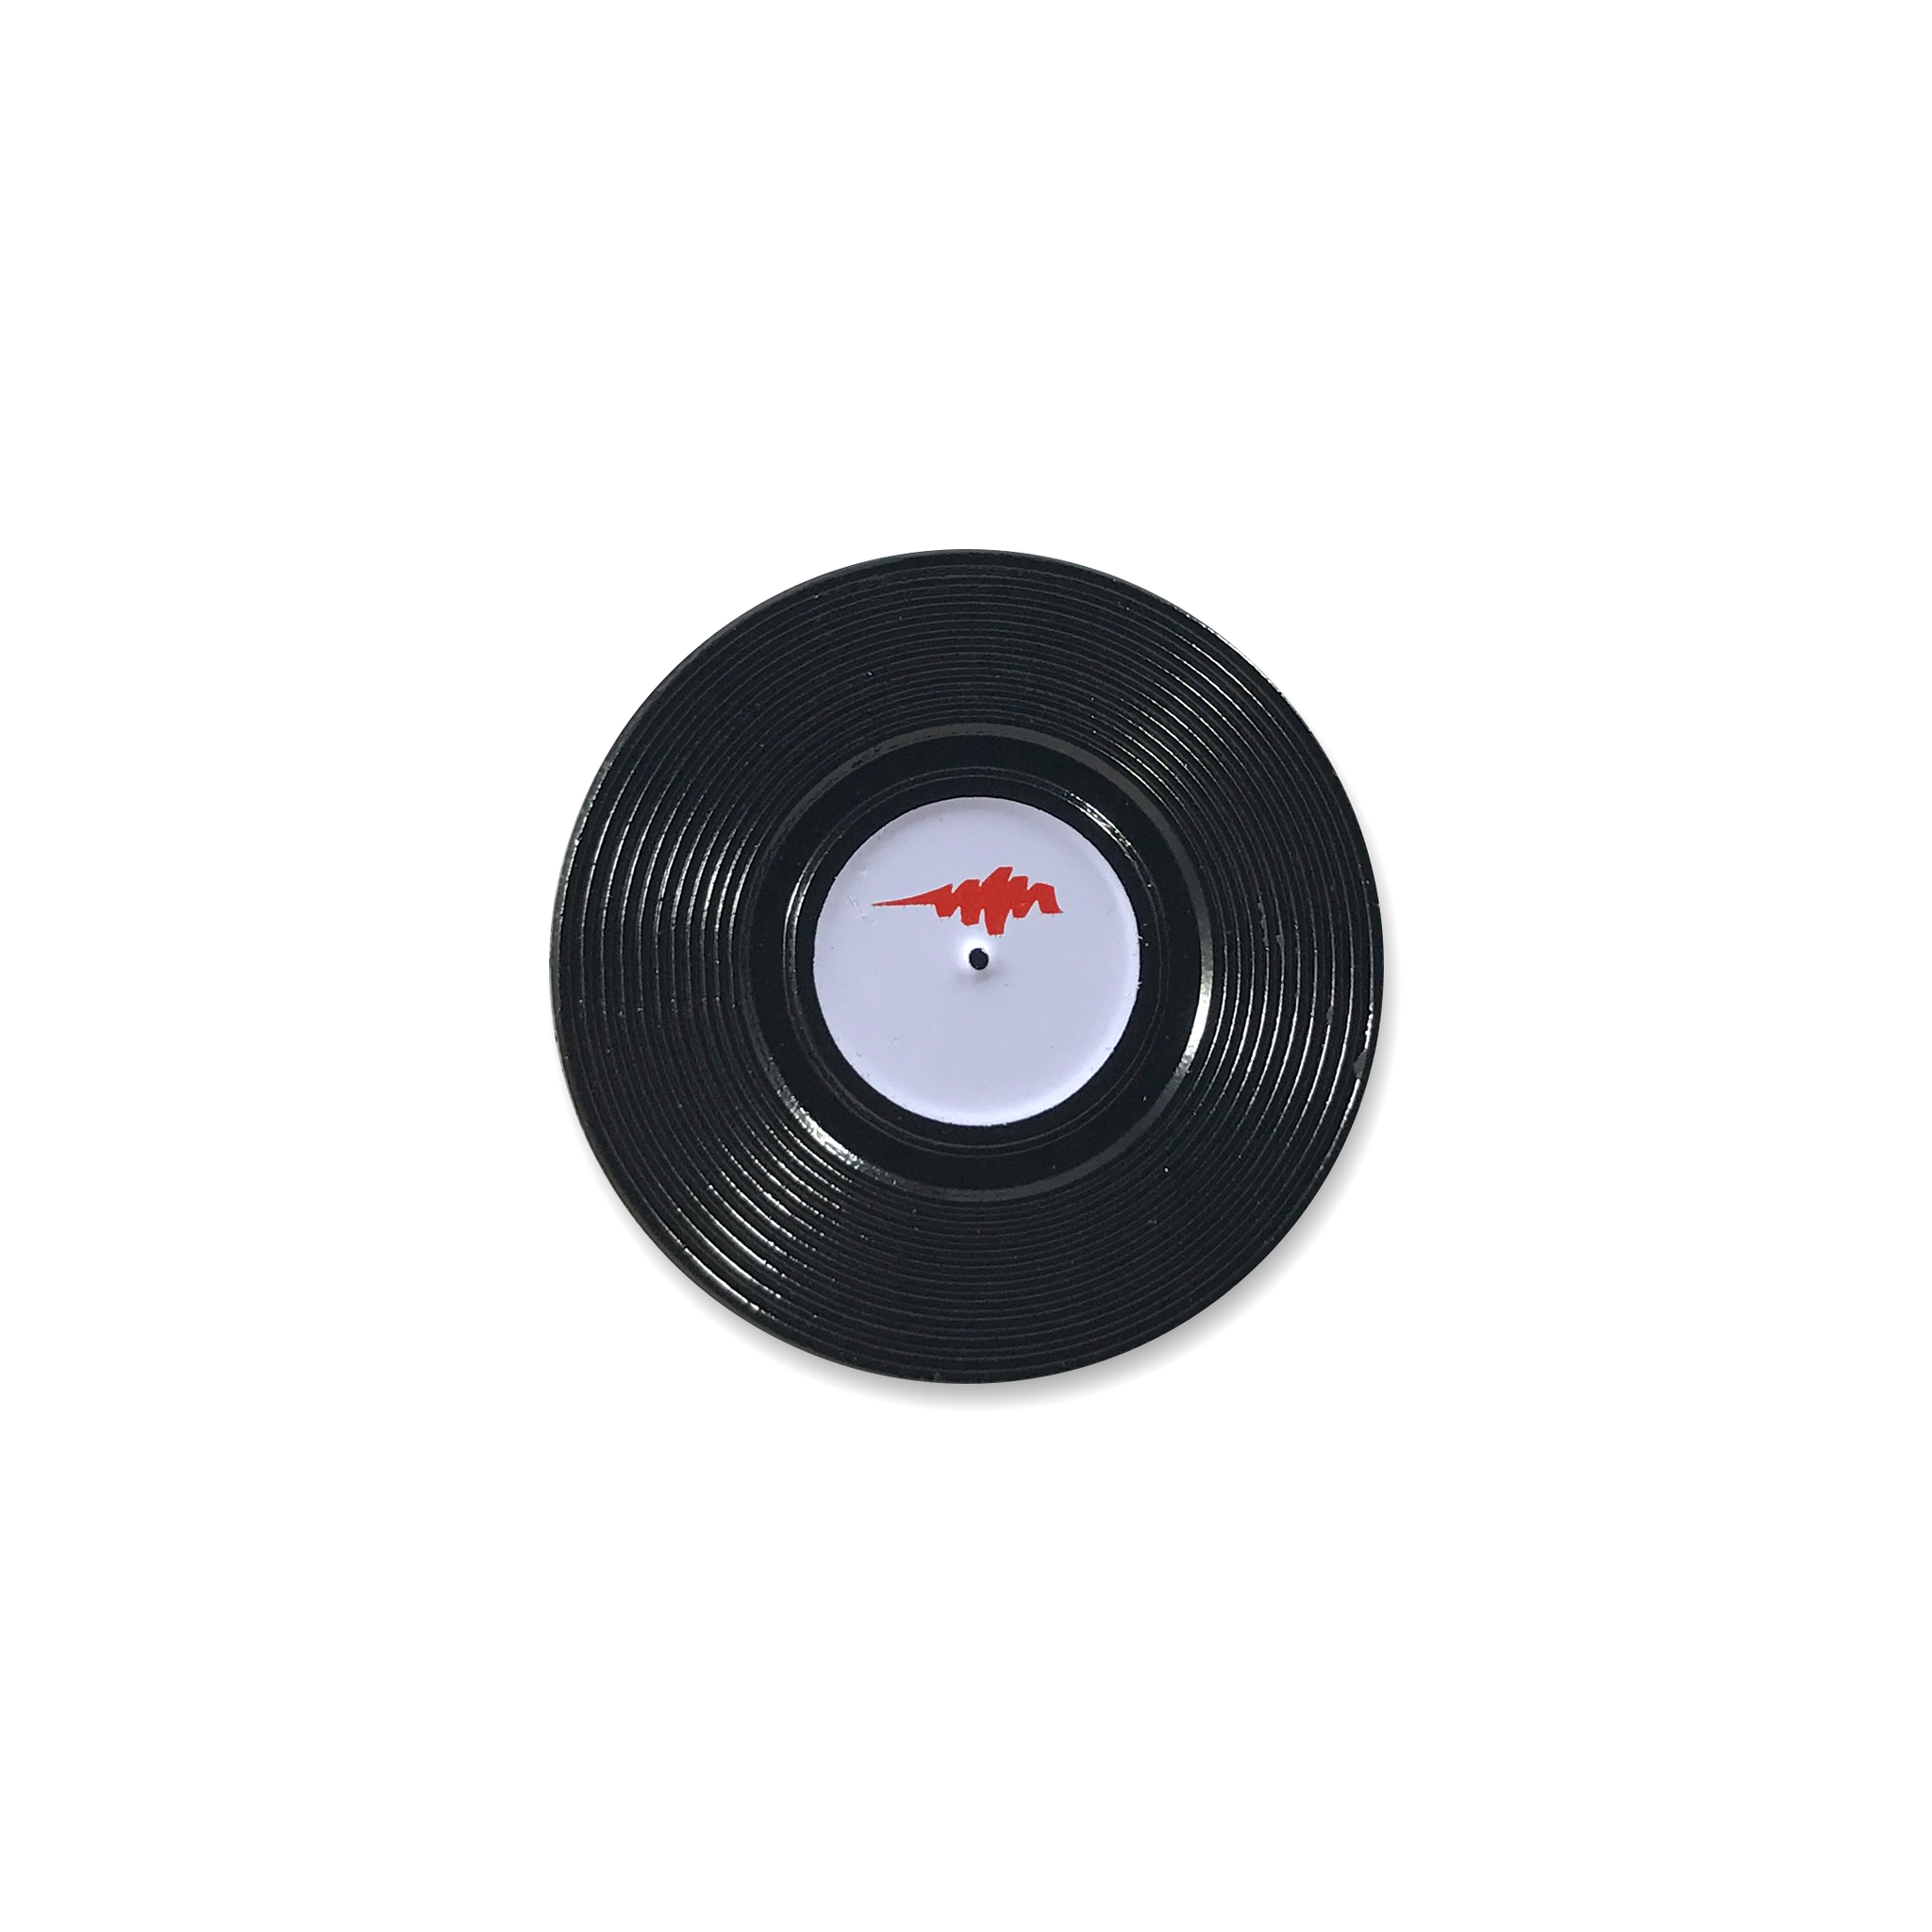 Classick Vinyl Pin